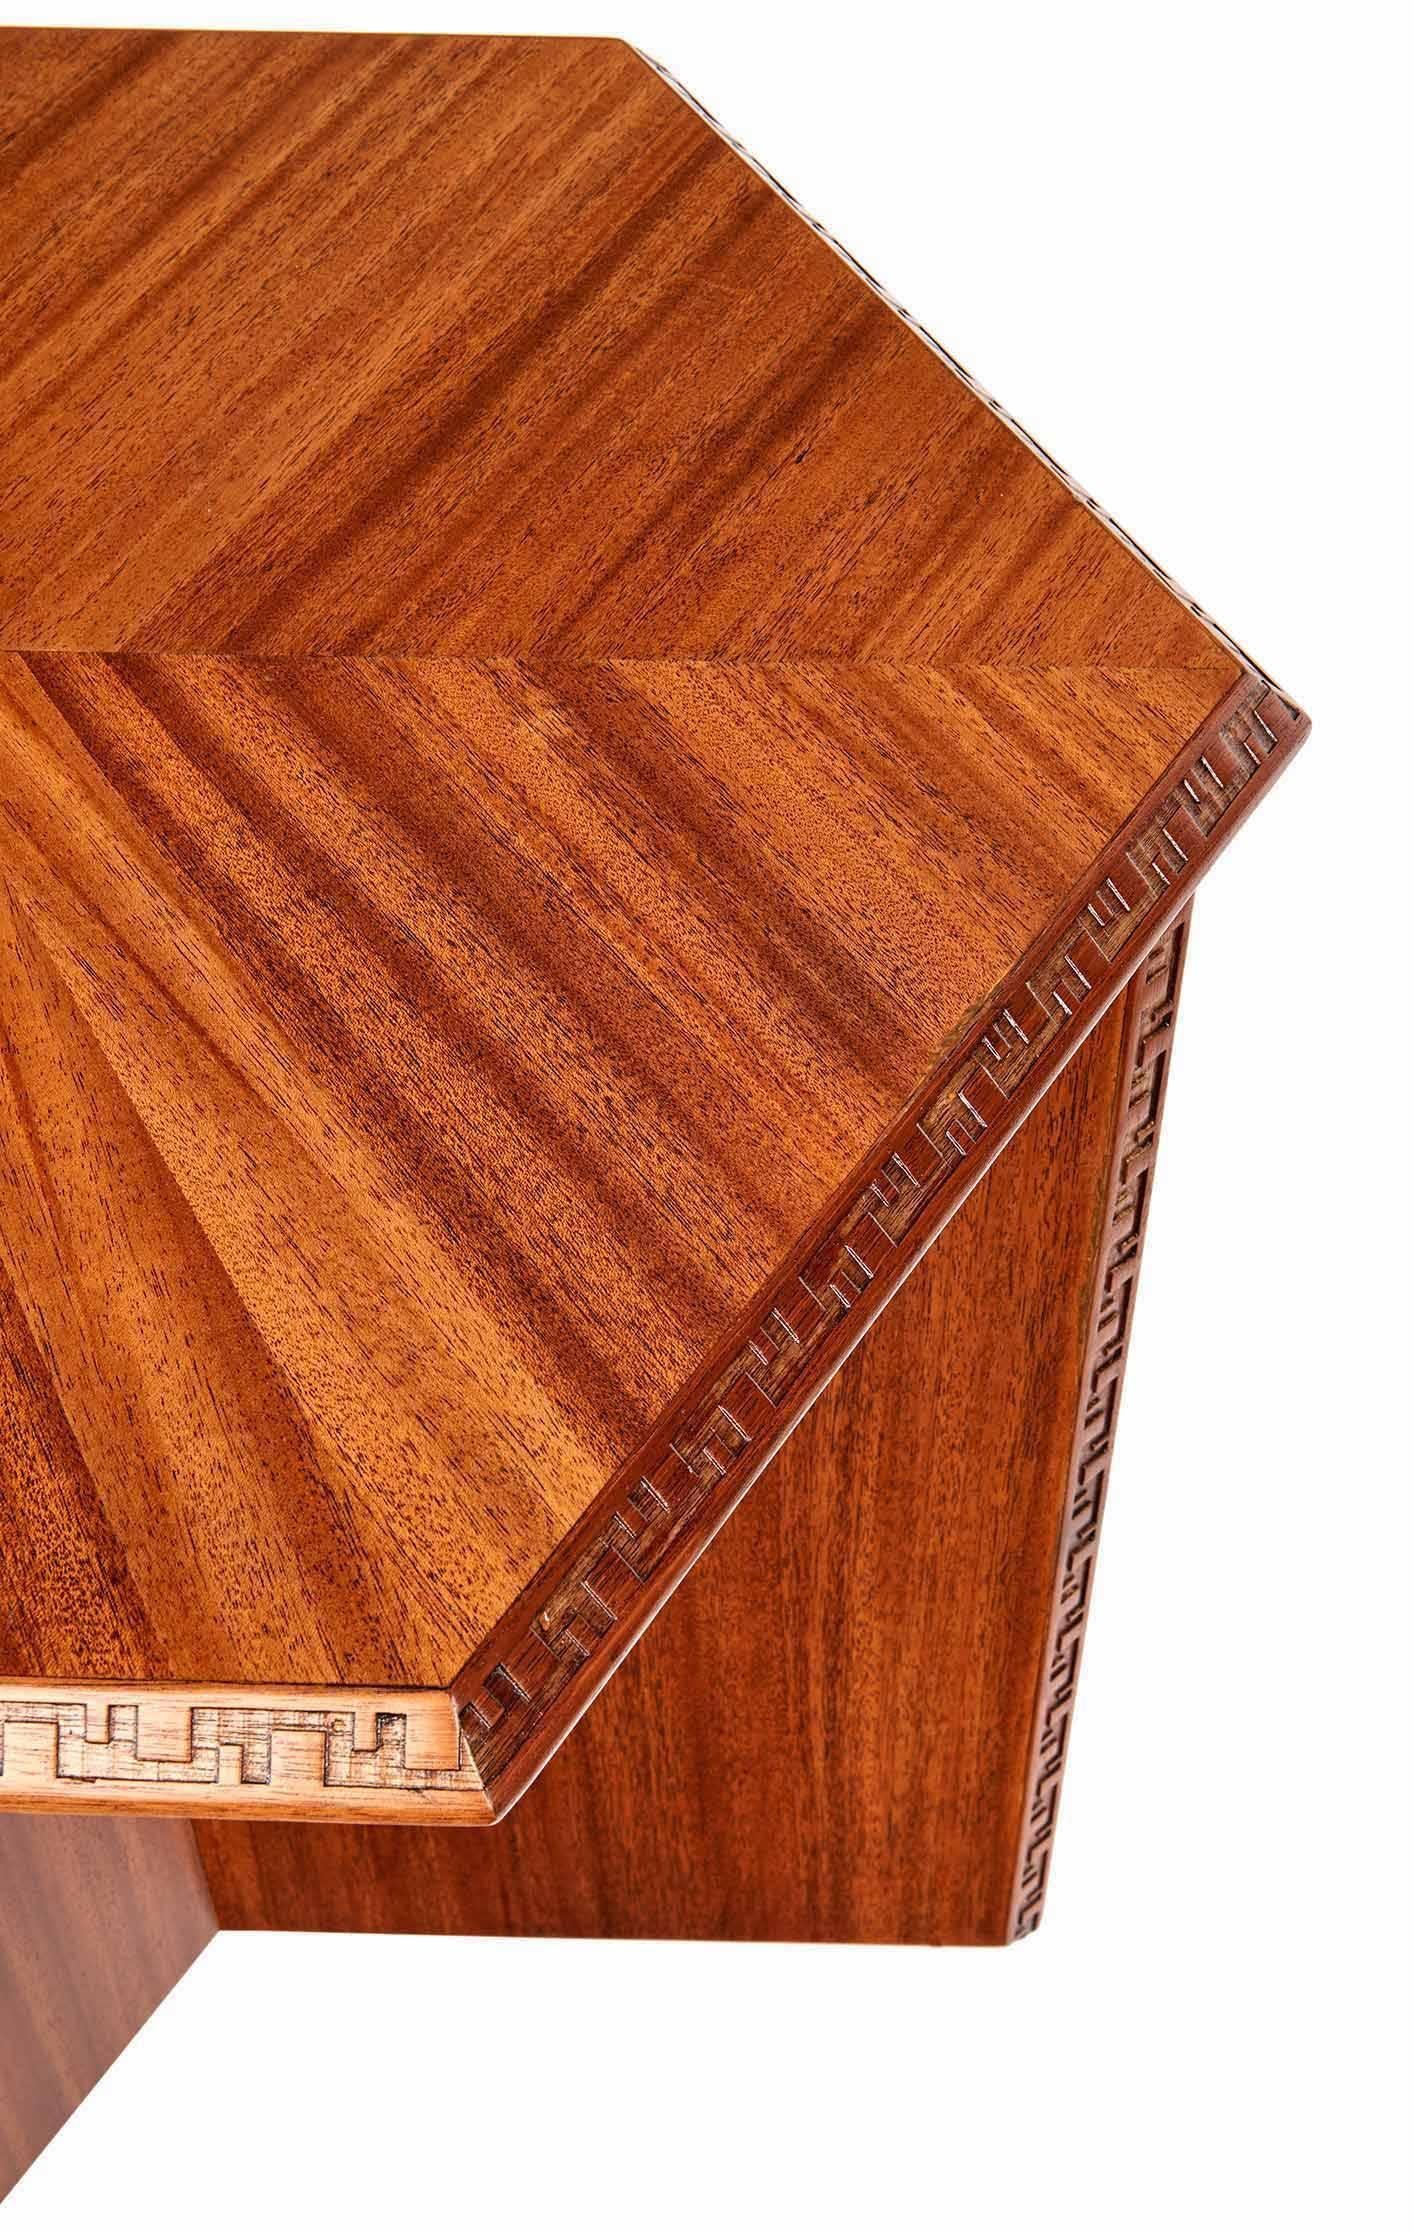 Mahogany Side Table by Frank Lloyd Wright 2